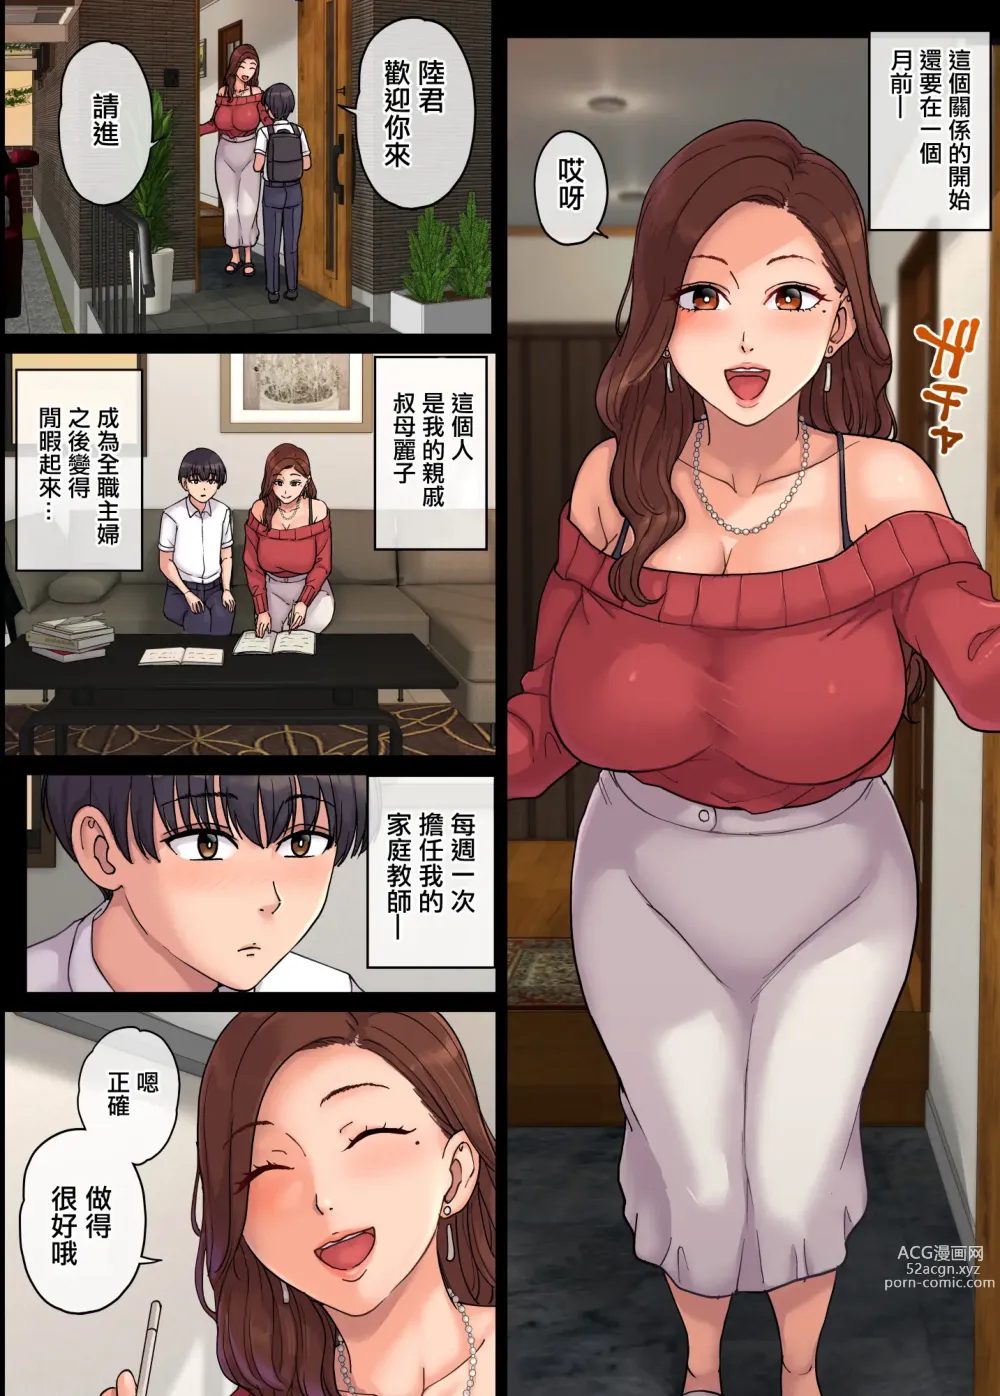 Page 5 of doujinshi 叔母の妊娠。僕が精子提供者になった訳